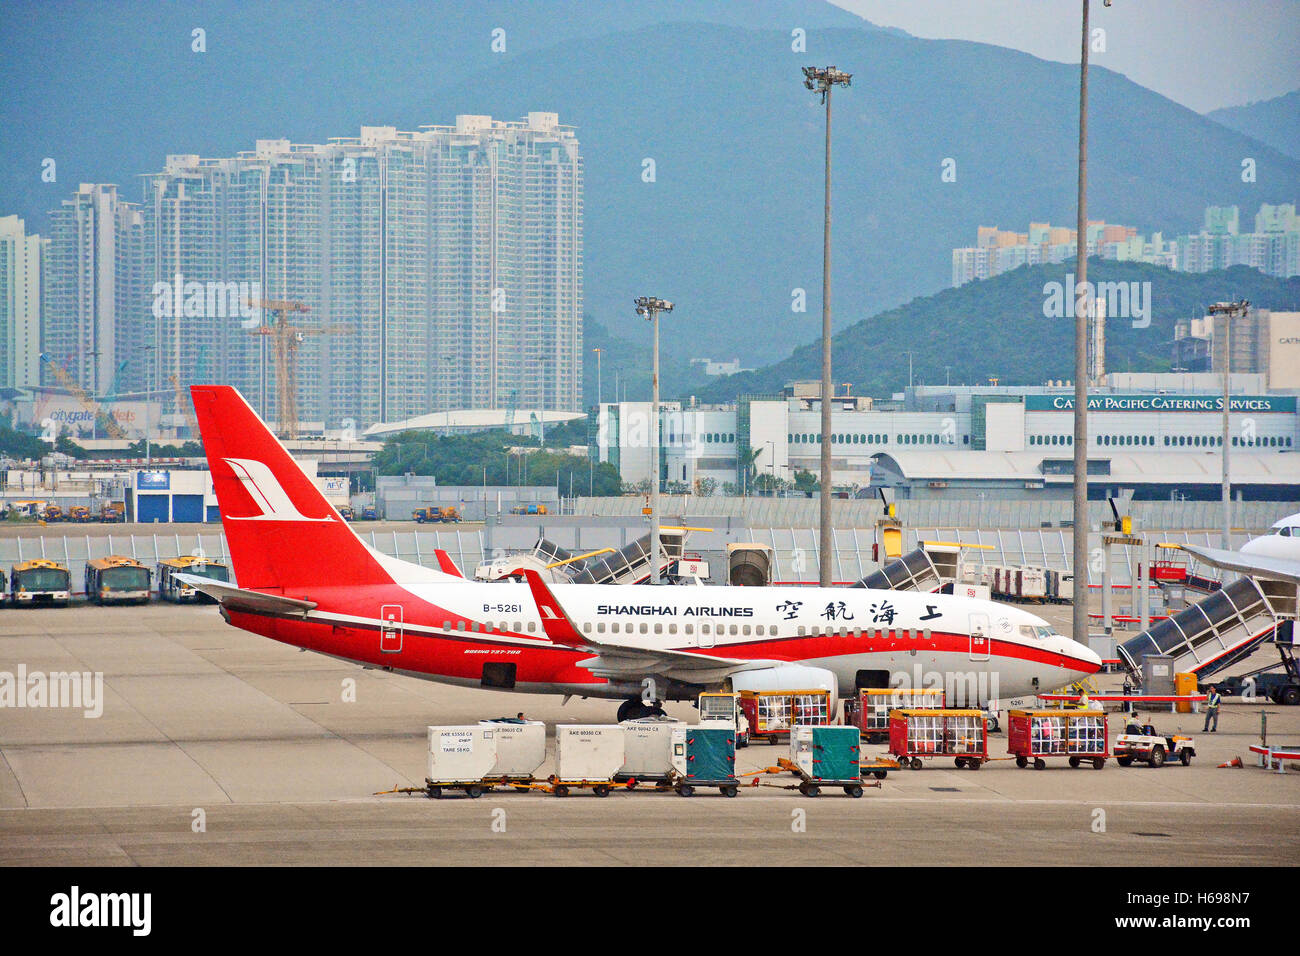 Hong Kong international airport Stock Photo